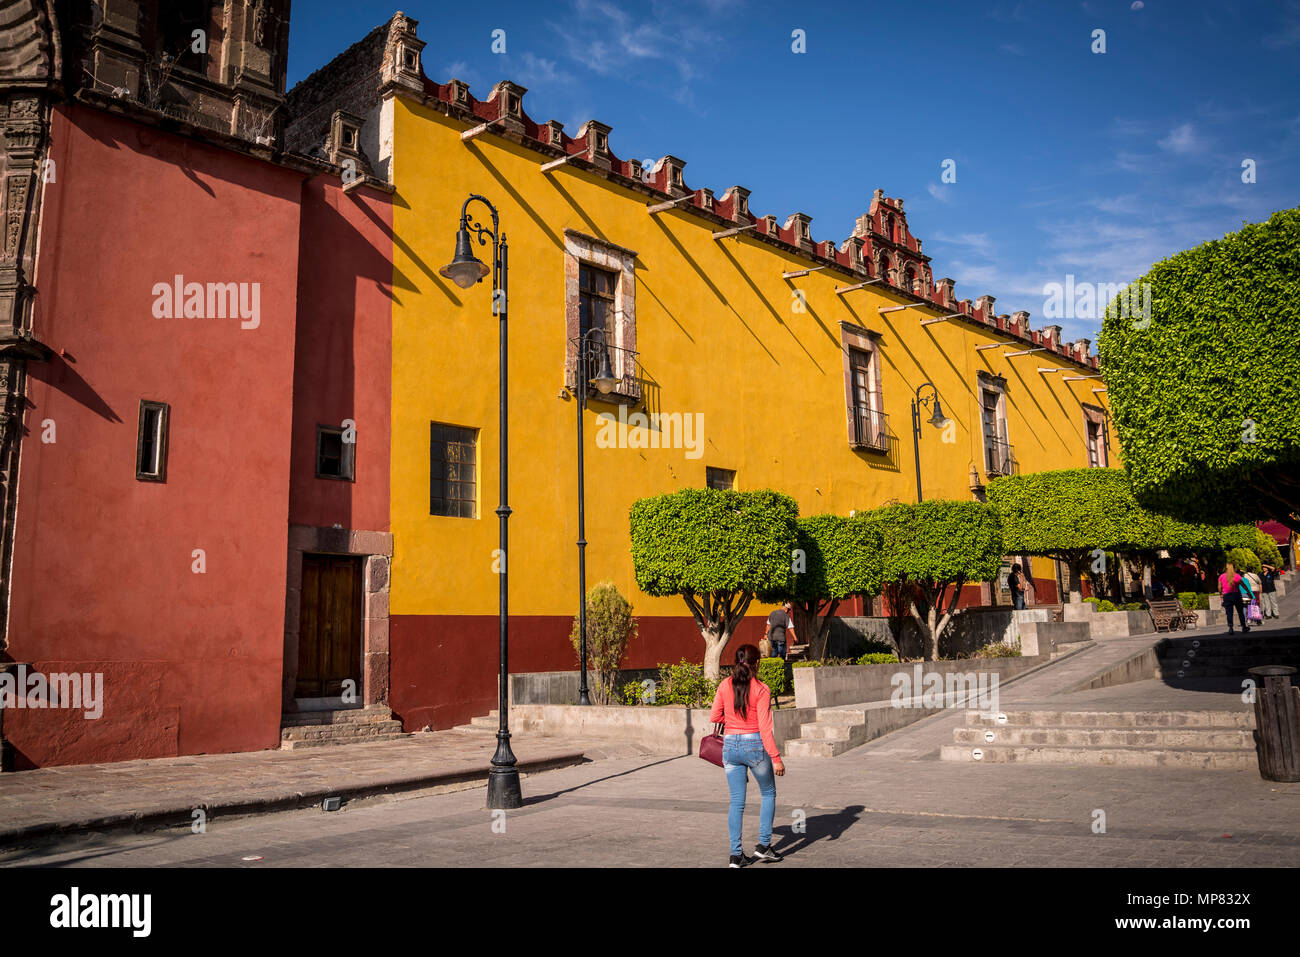 Plaza Civica mit typischen runden Bäume und Universität Gebäude, San Miguel de Allende, einer kolonialen-era City, Bajío region, zentralen Mexiko Stockfoto